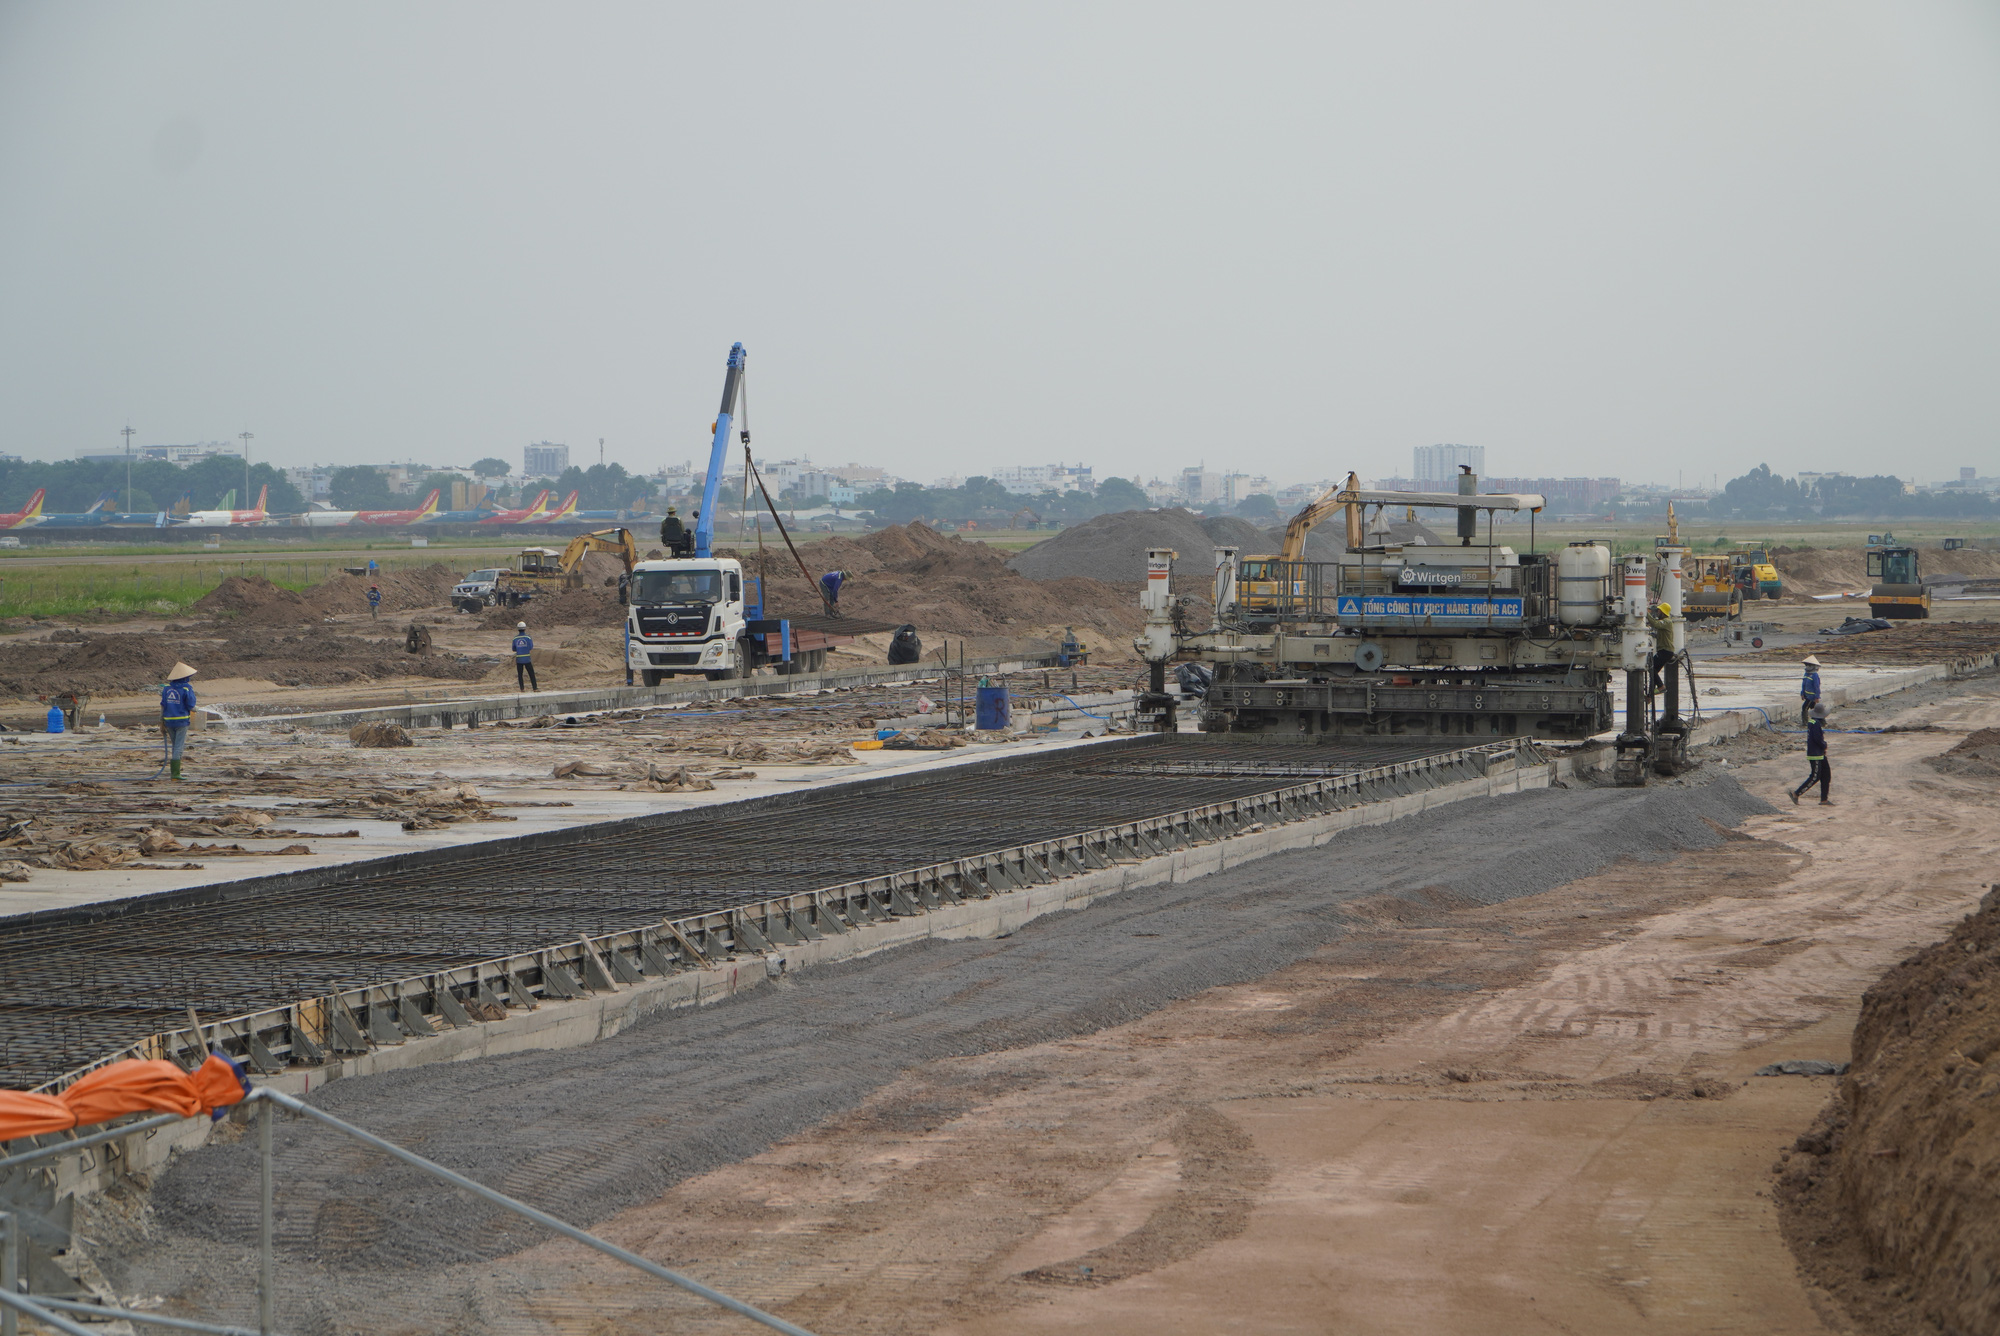 Trước đó vào ngày 05/08, dự án cải tạo đường băng Tân Sơn Nhất đã phải tạm dừng